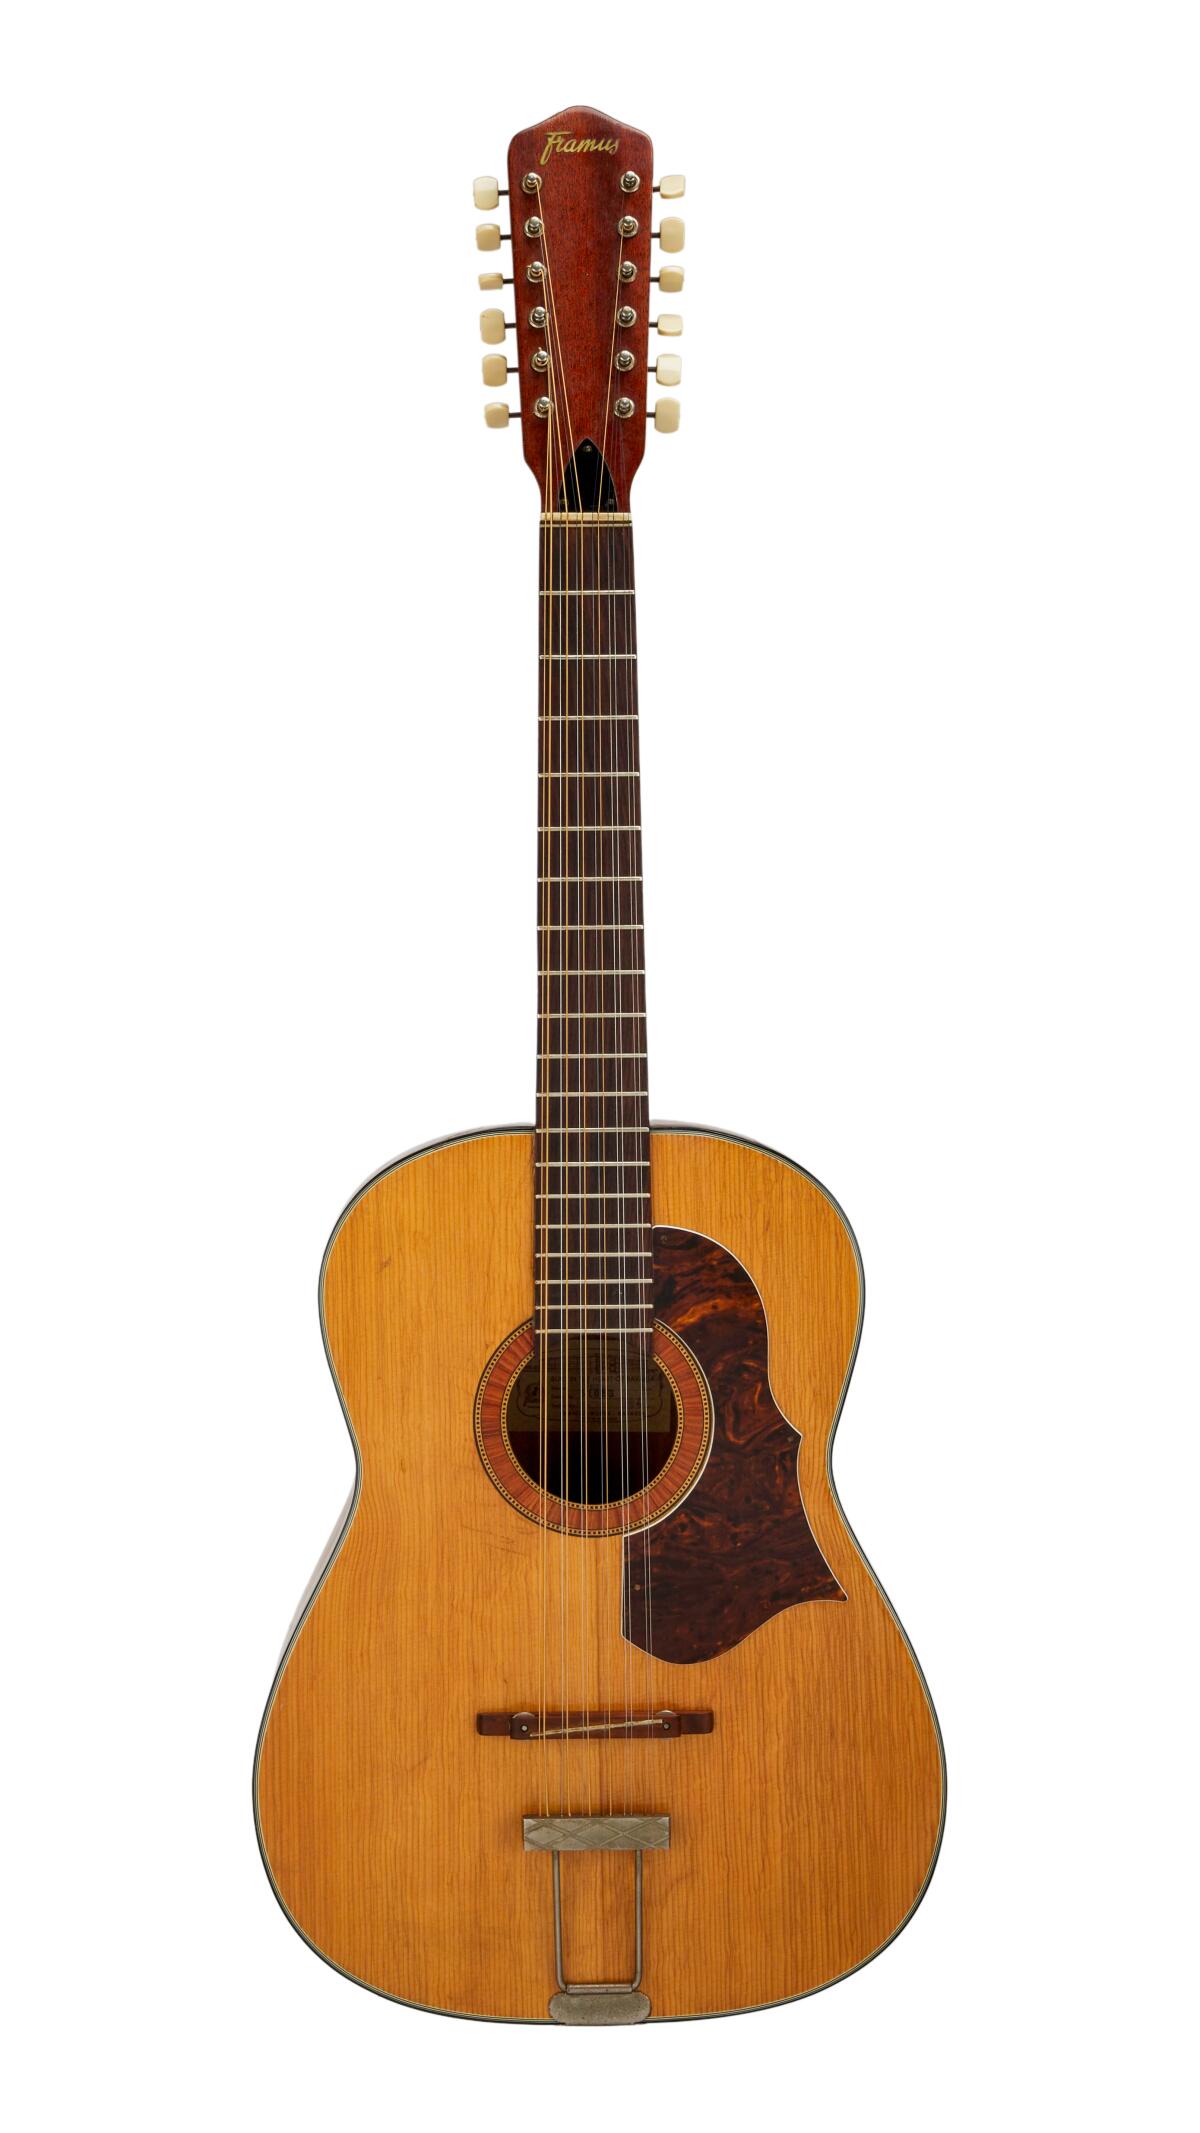 A 12-string Framus guitar